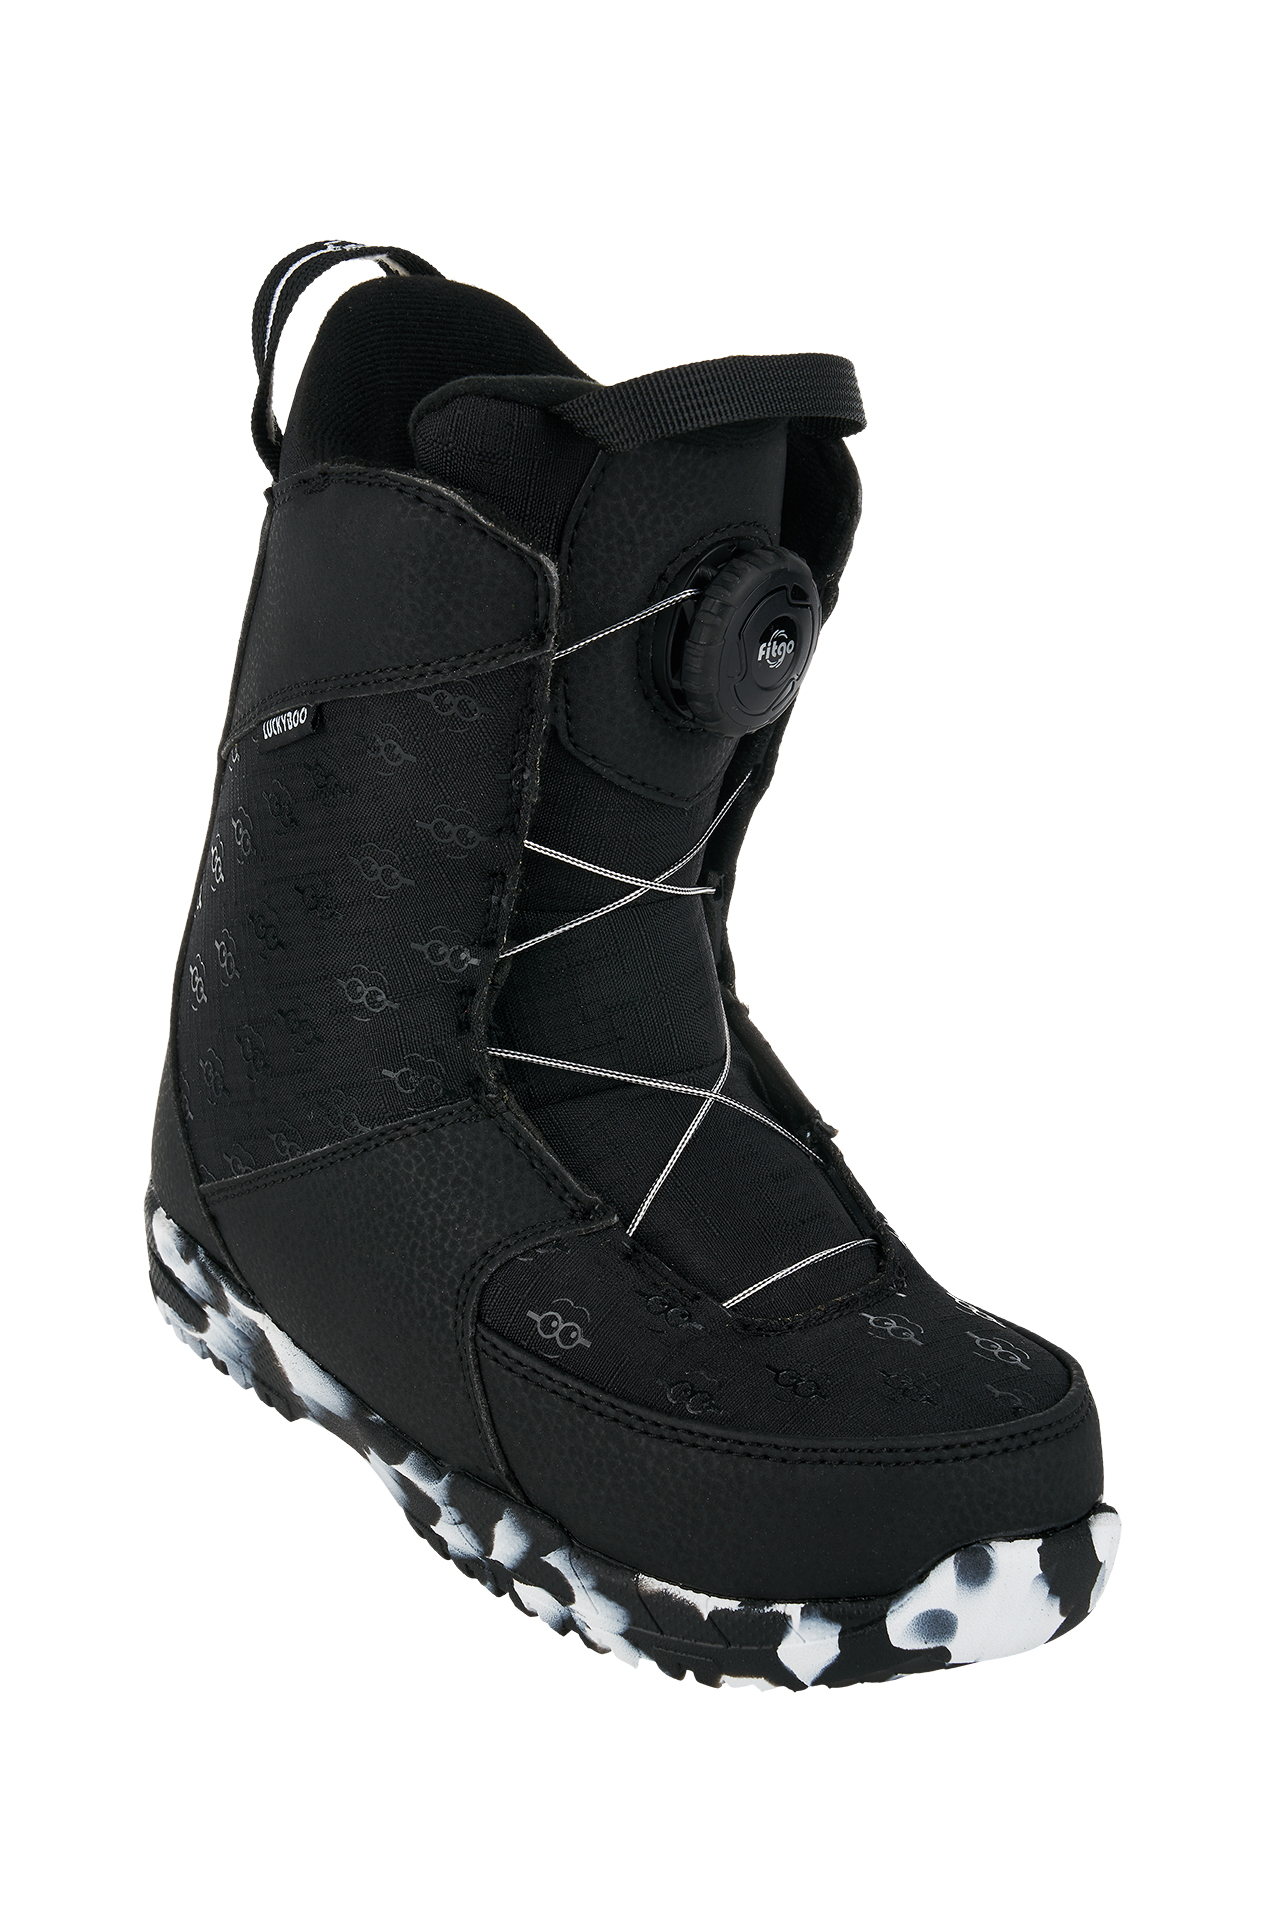 Ботинки для сноуборда Luckyboo Future Fastec 2021 черный 19 см